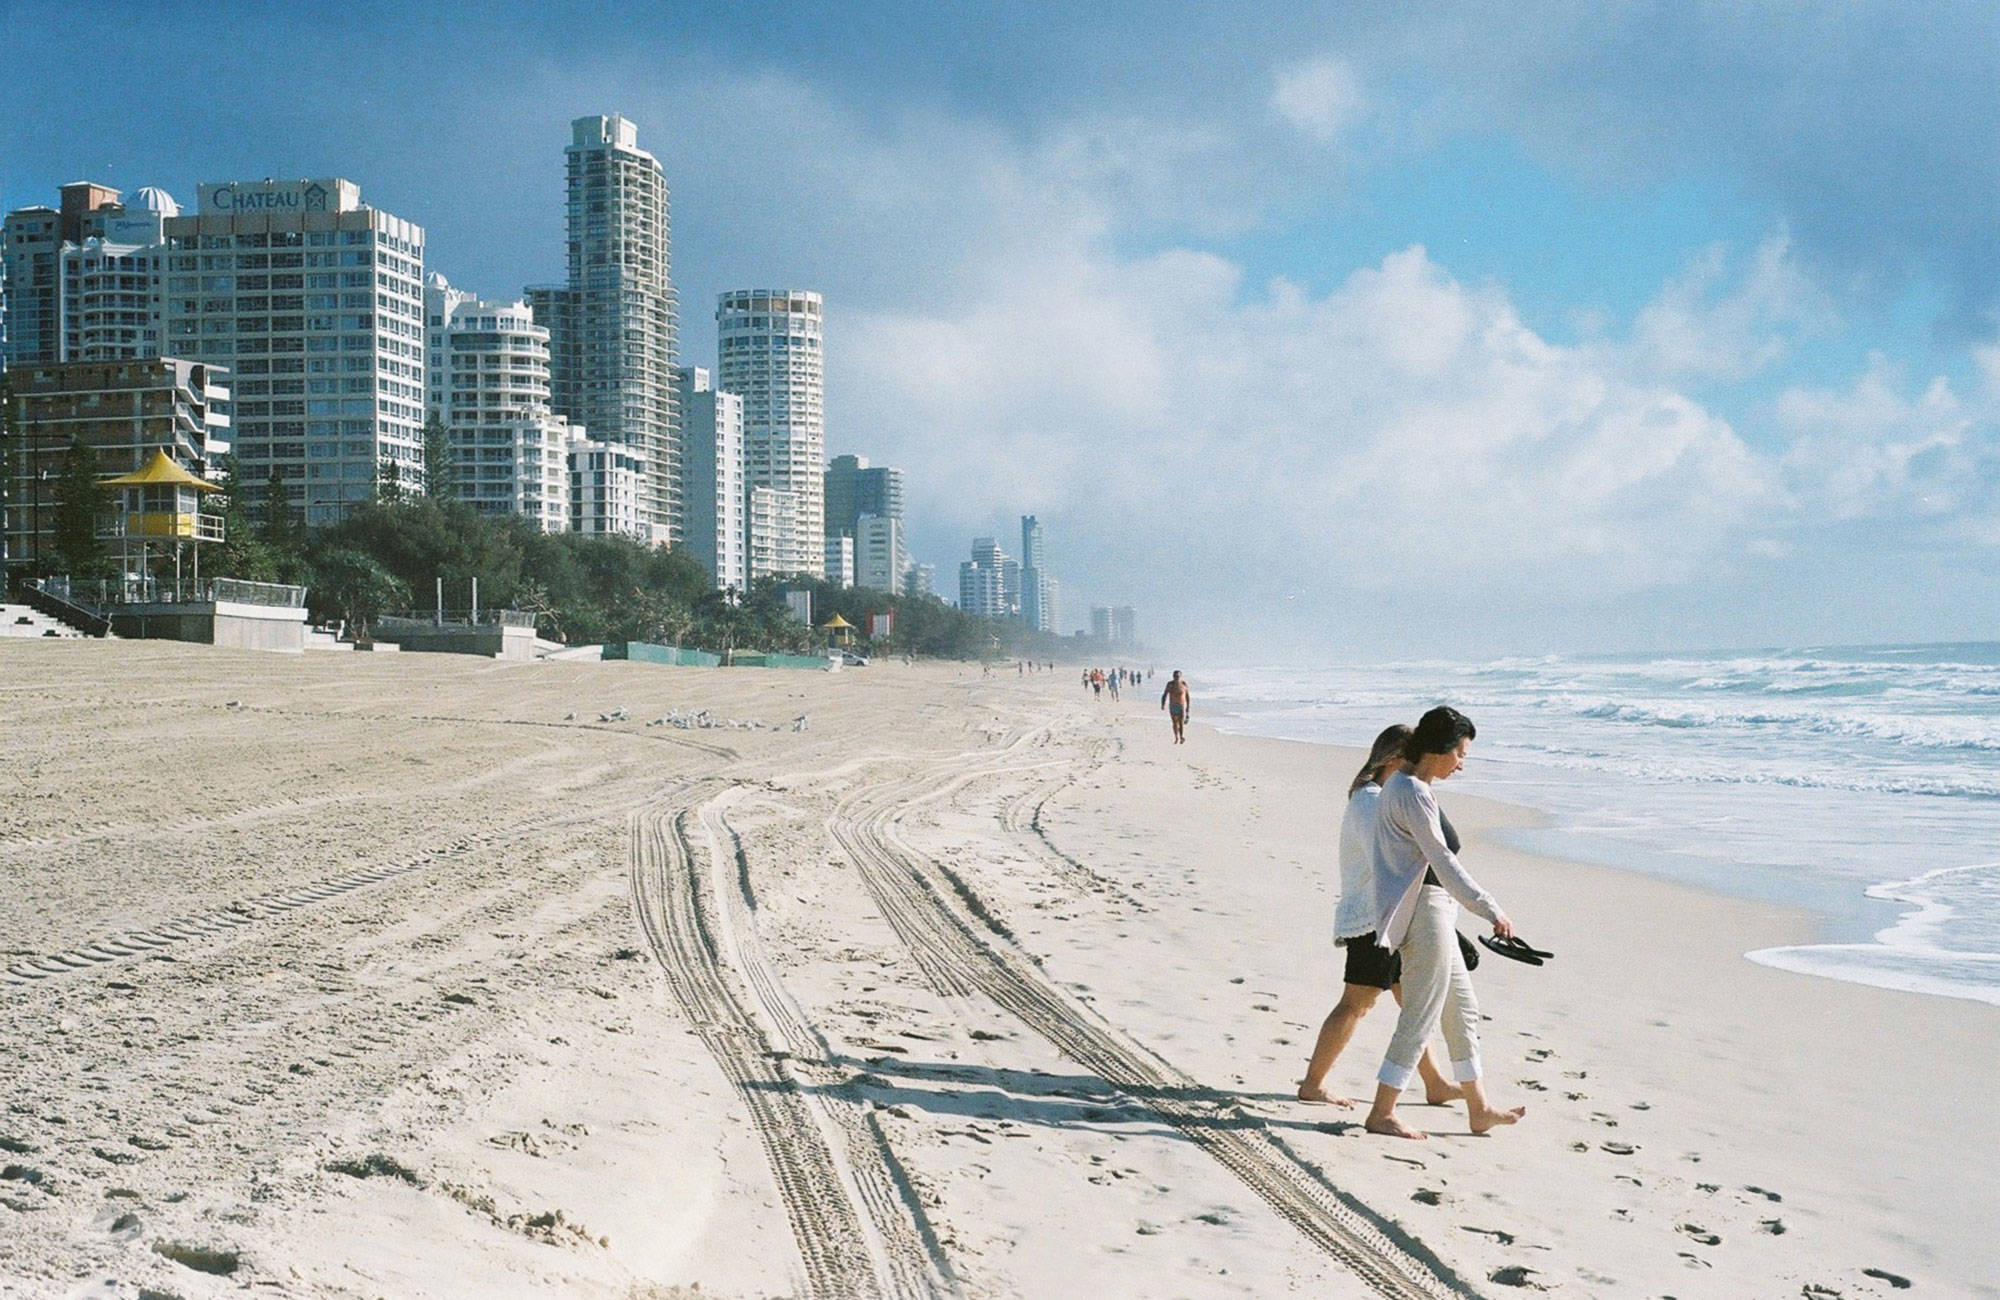 Vandra barfota på Gold Coast's strand mellan föreläsningarna när du pluggar på Gold Coast